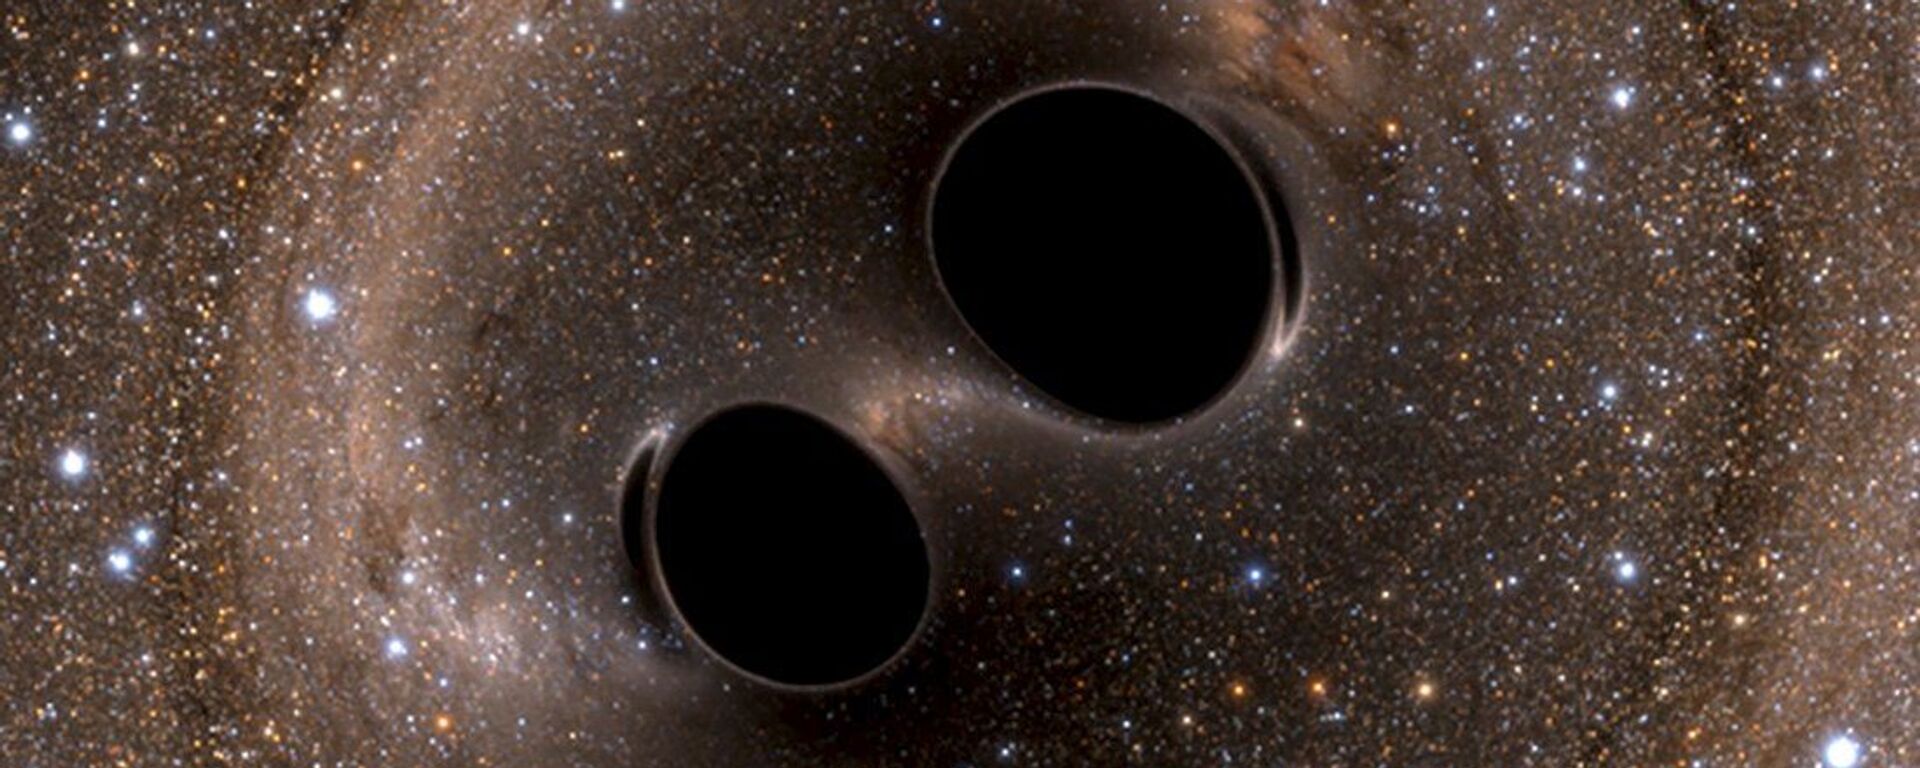 Гравитационные волны, генерируемые двумя черными дырами - Sputnik International, 1920, 16.01.2021